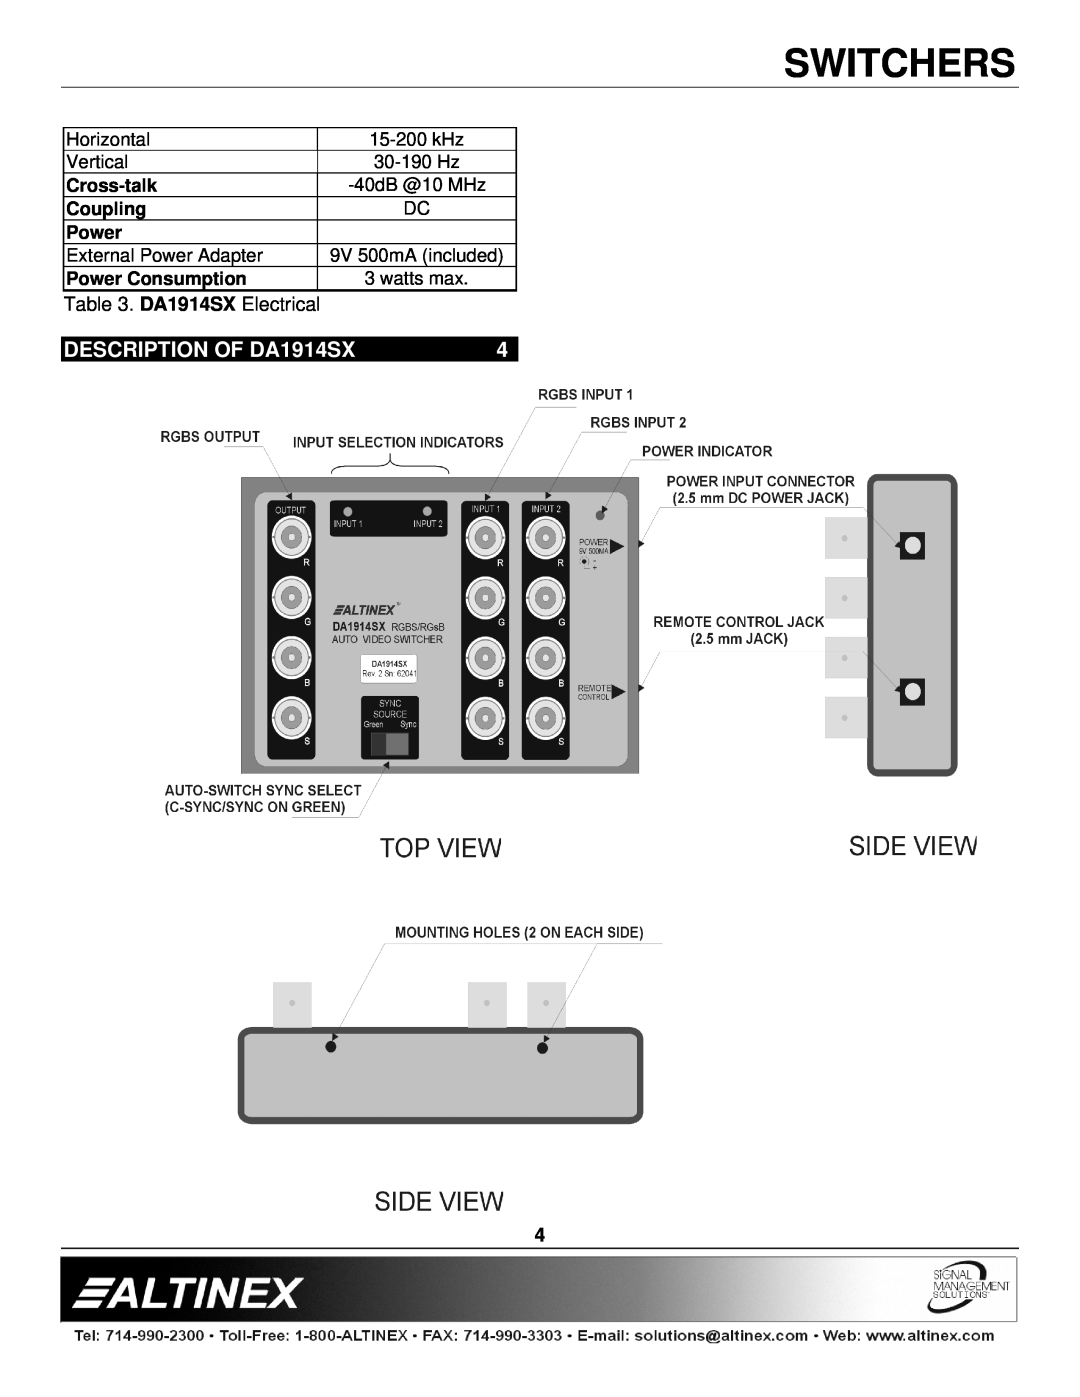 Altinex manual DESCRIPTION OF DA1914SX, Switchers, DA1914SX Electrical 